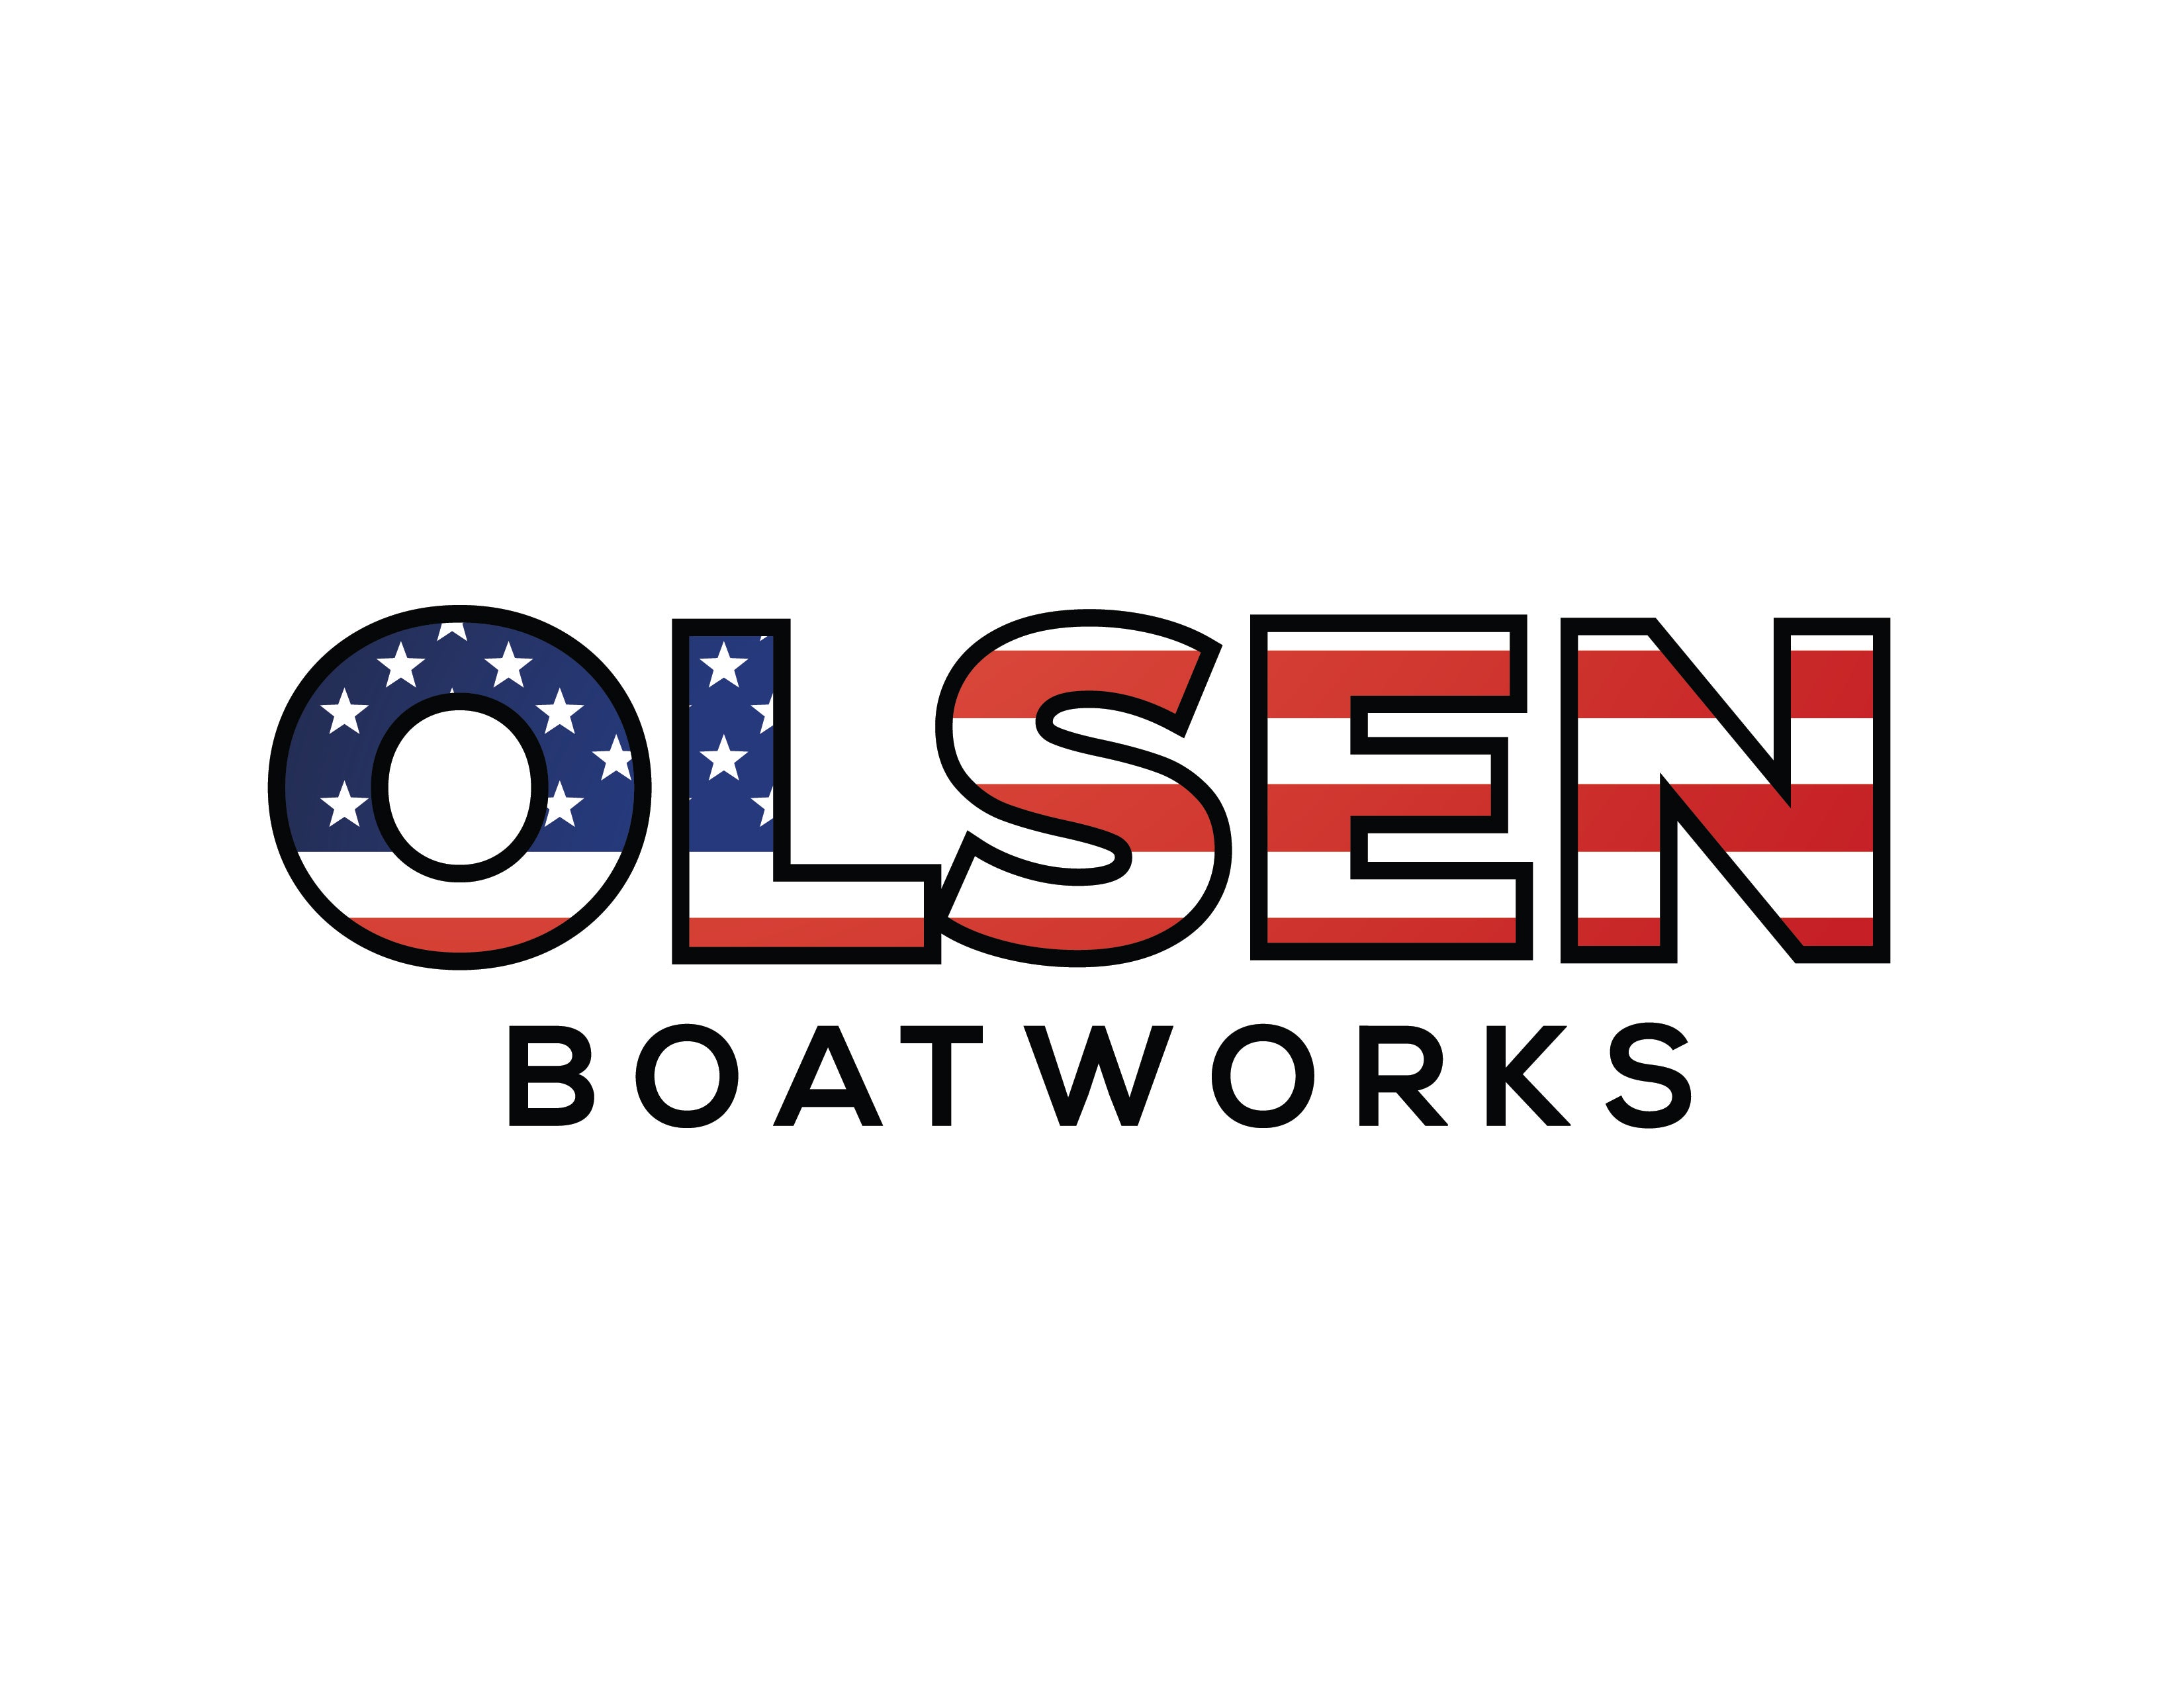 OlsenBoatworks